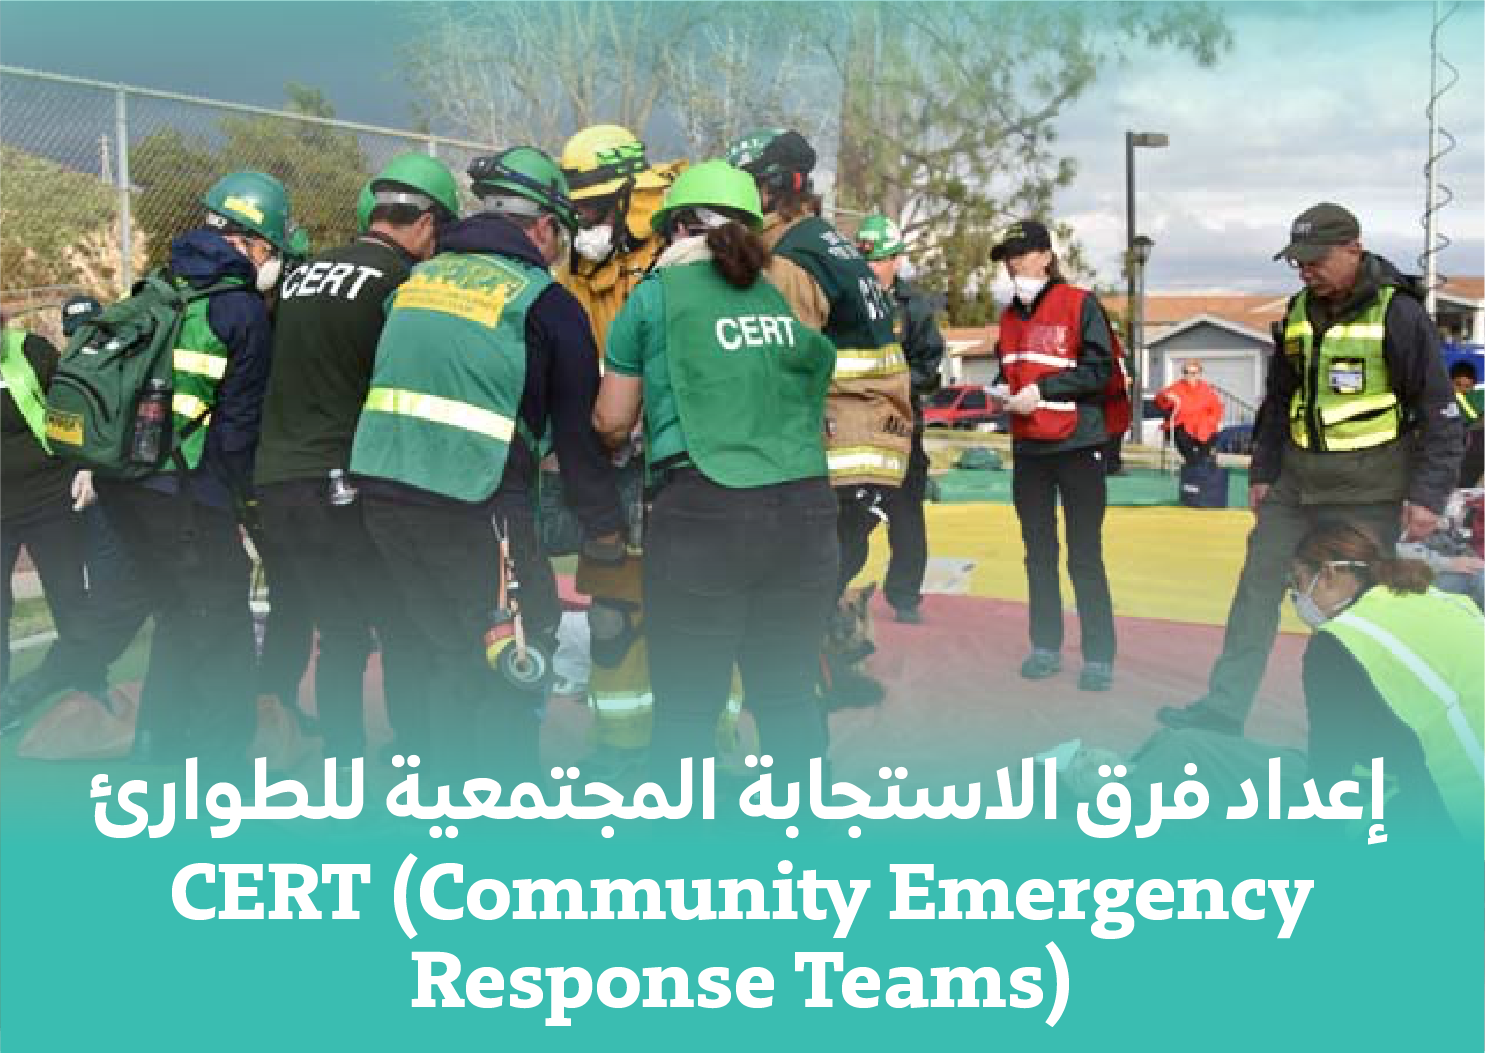  التدريب الرئيسي لفريق الاستجابة المجتمعية للطوارئ